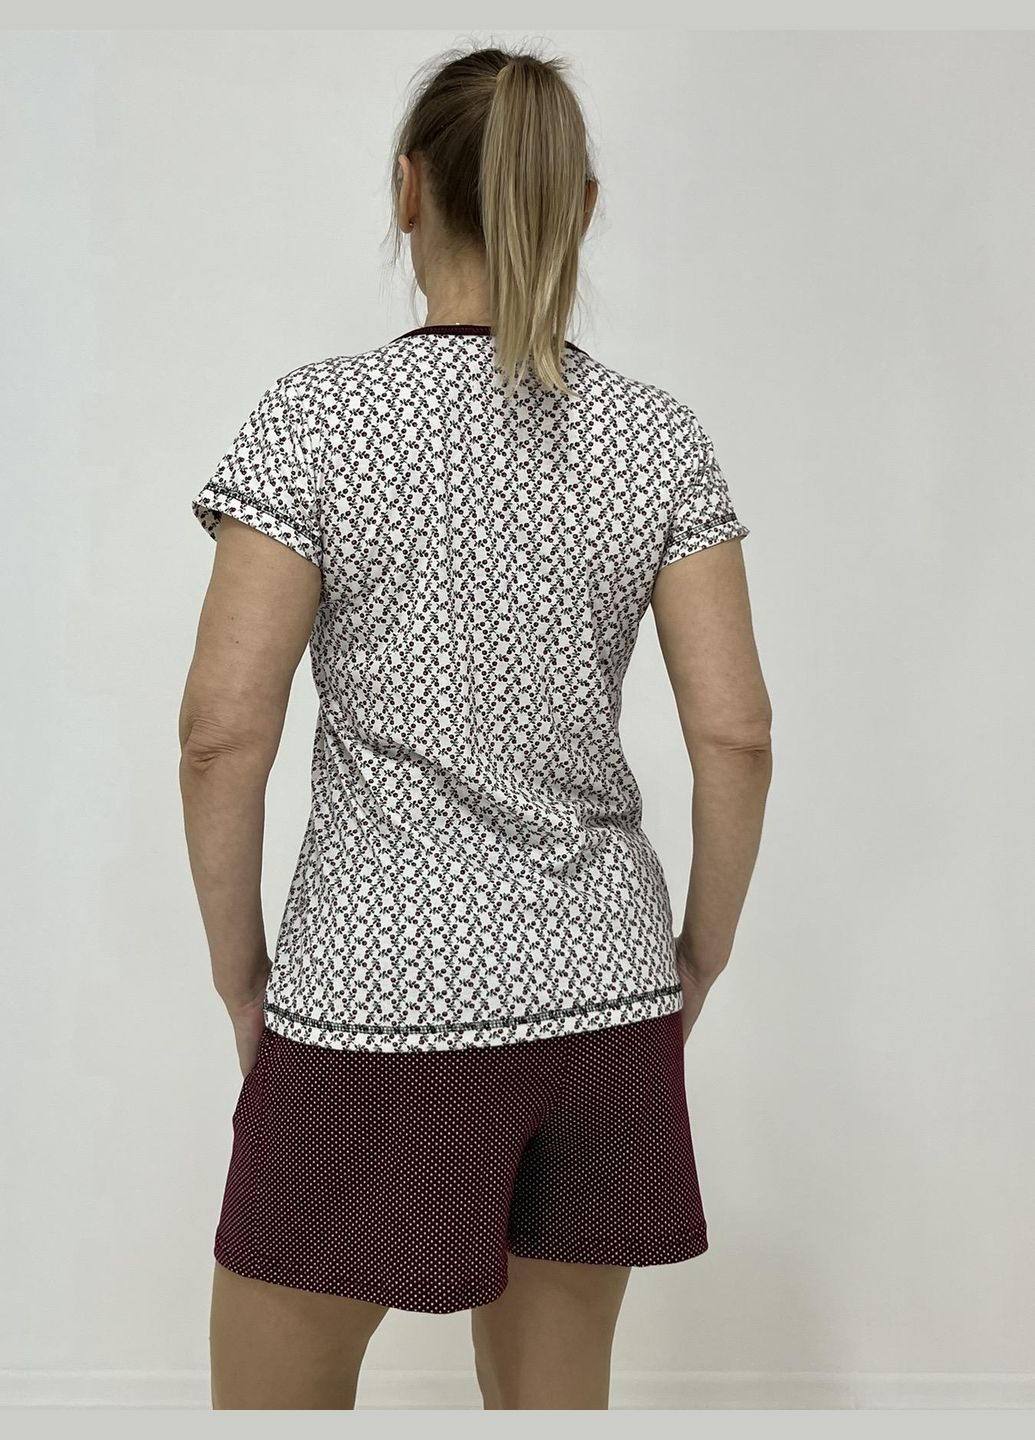 Бордова всесезон домашній жіночий комплект зоя (футболка + шорти) 58-60 бордо-беж 42030055-3 Triko